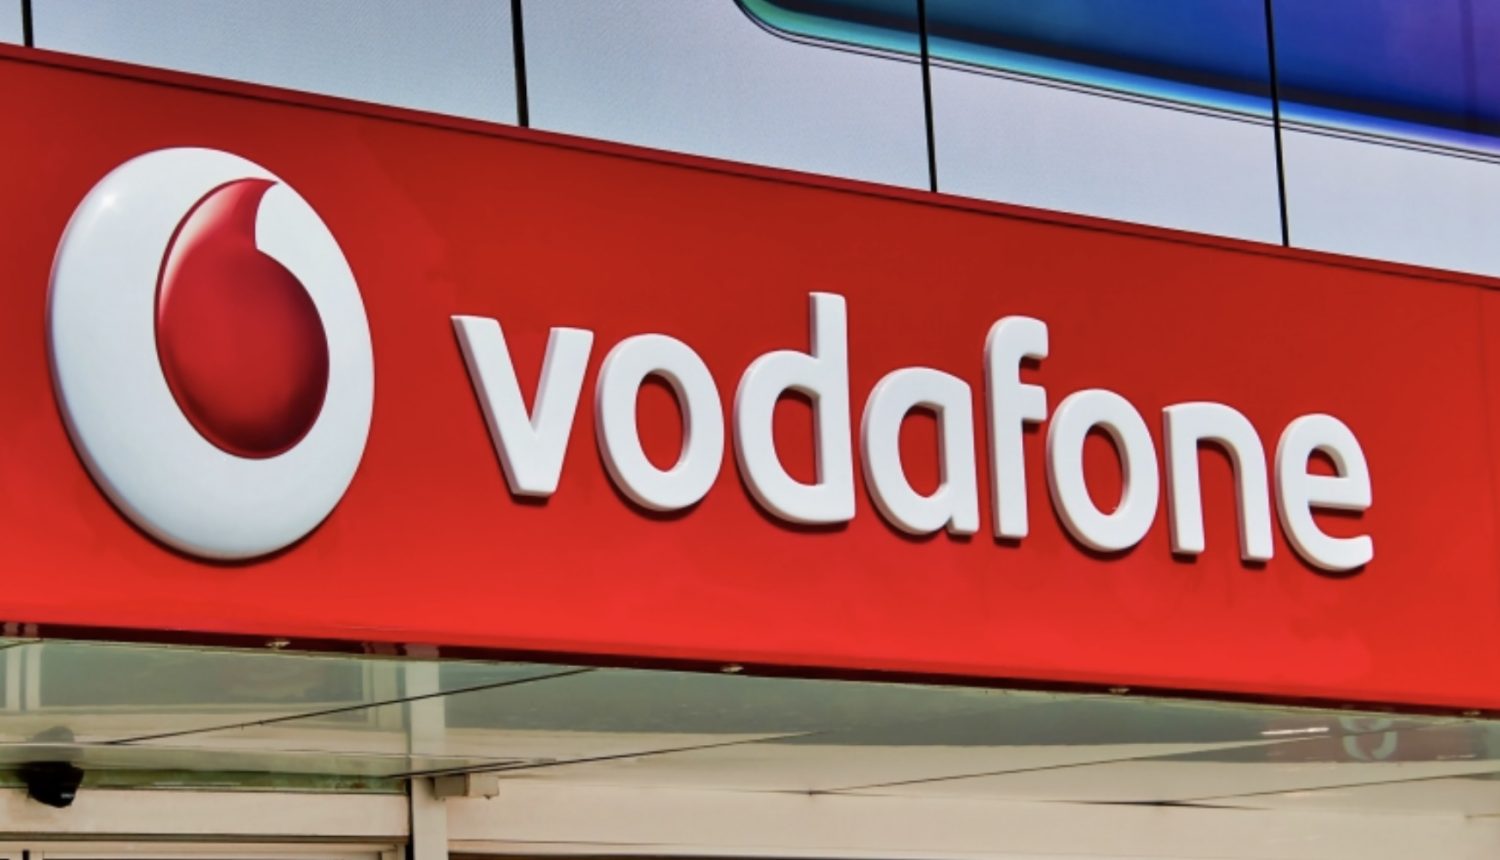 Itt vannak a Vodafone új csomagjai, megszűnnek a RED és a GO tarifák